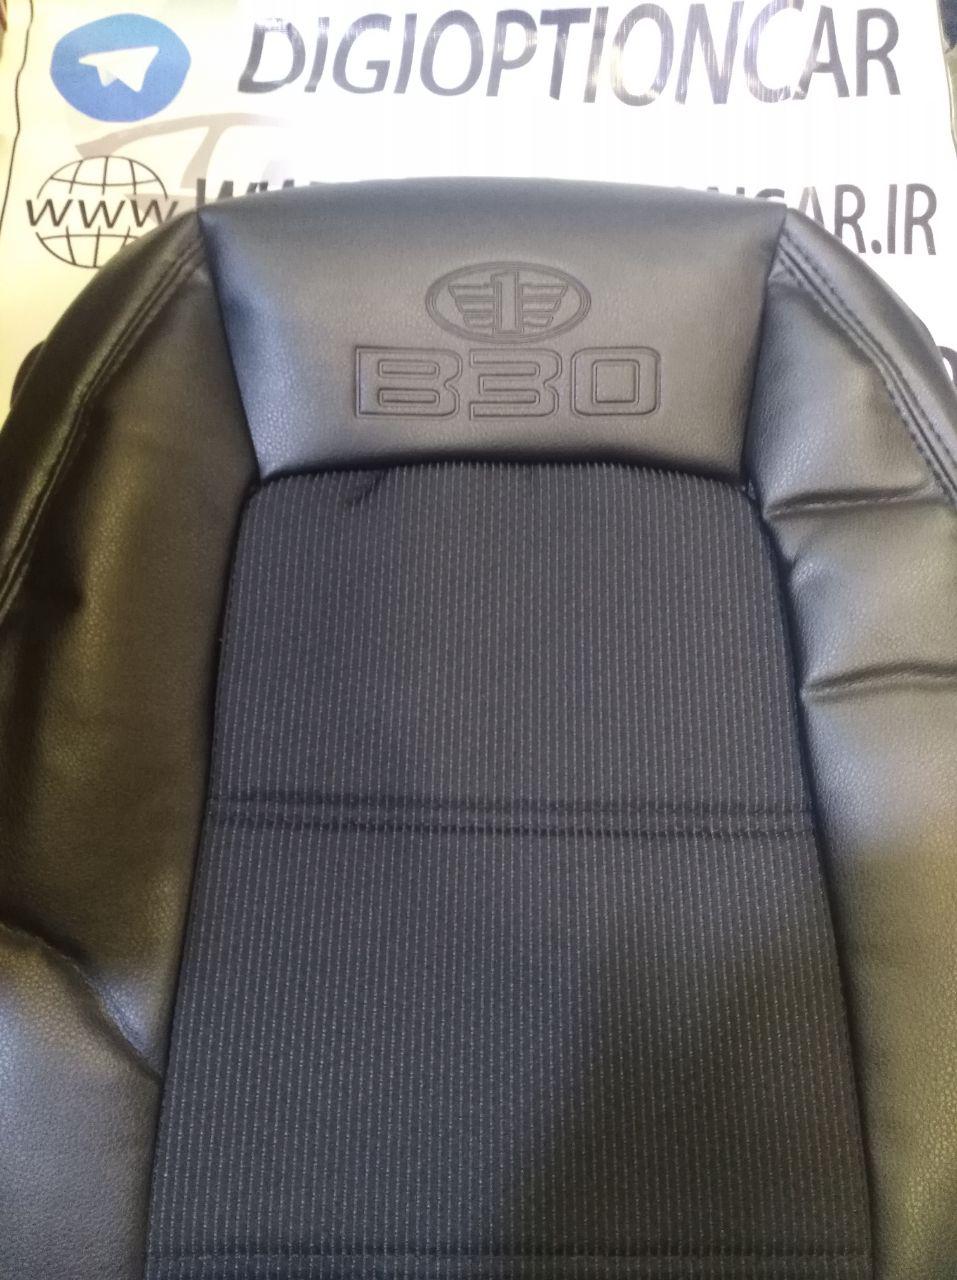 روکش صندلی چرم و پارچه طرح فابریک بسترن B30